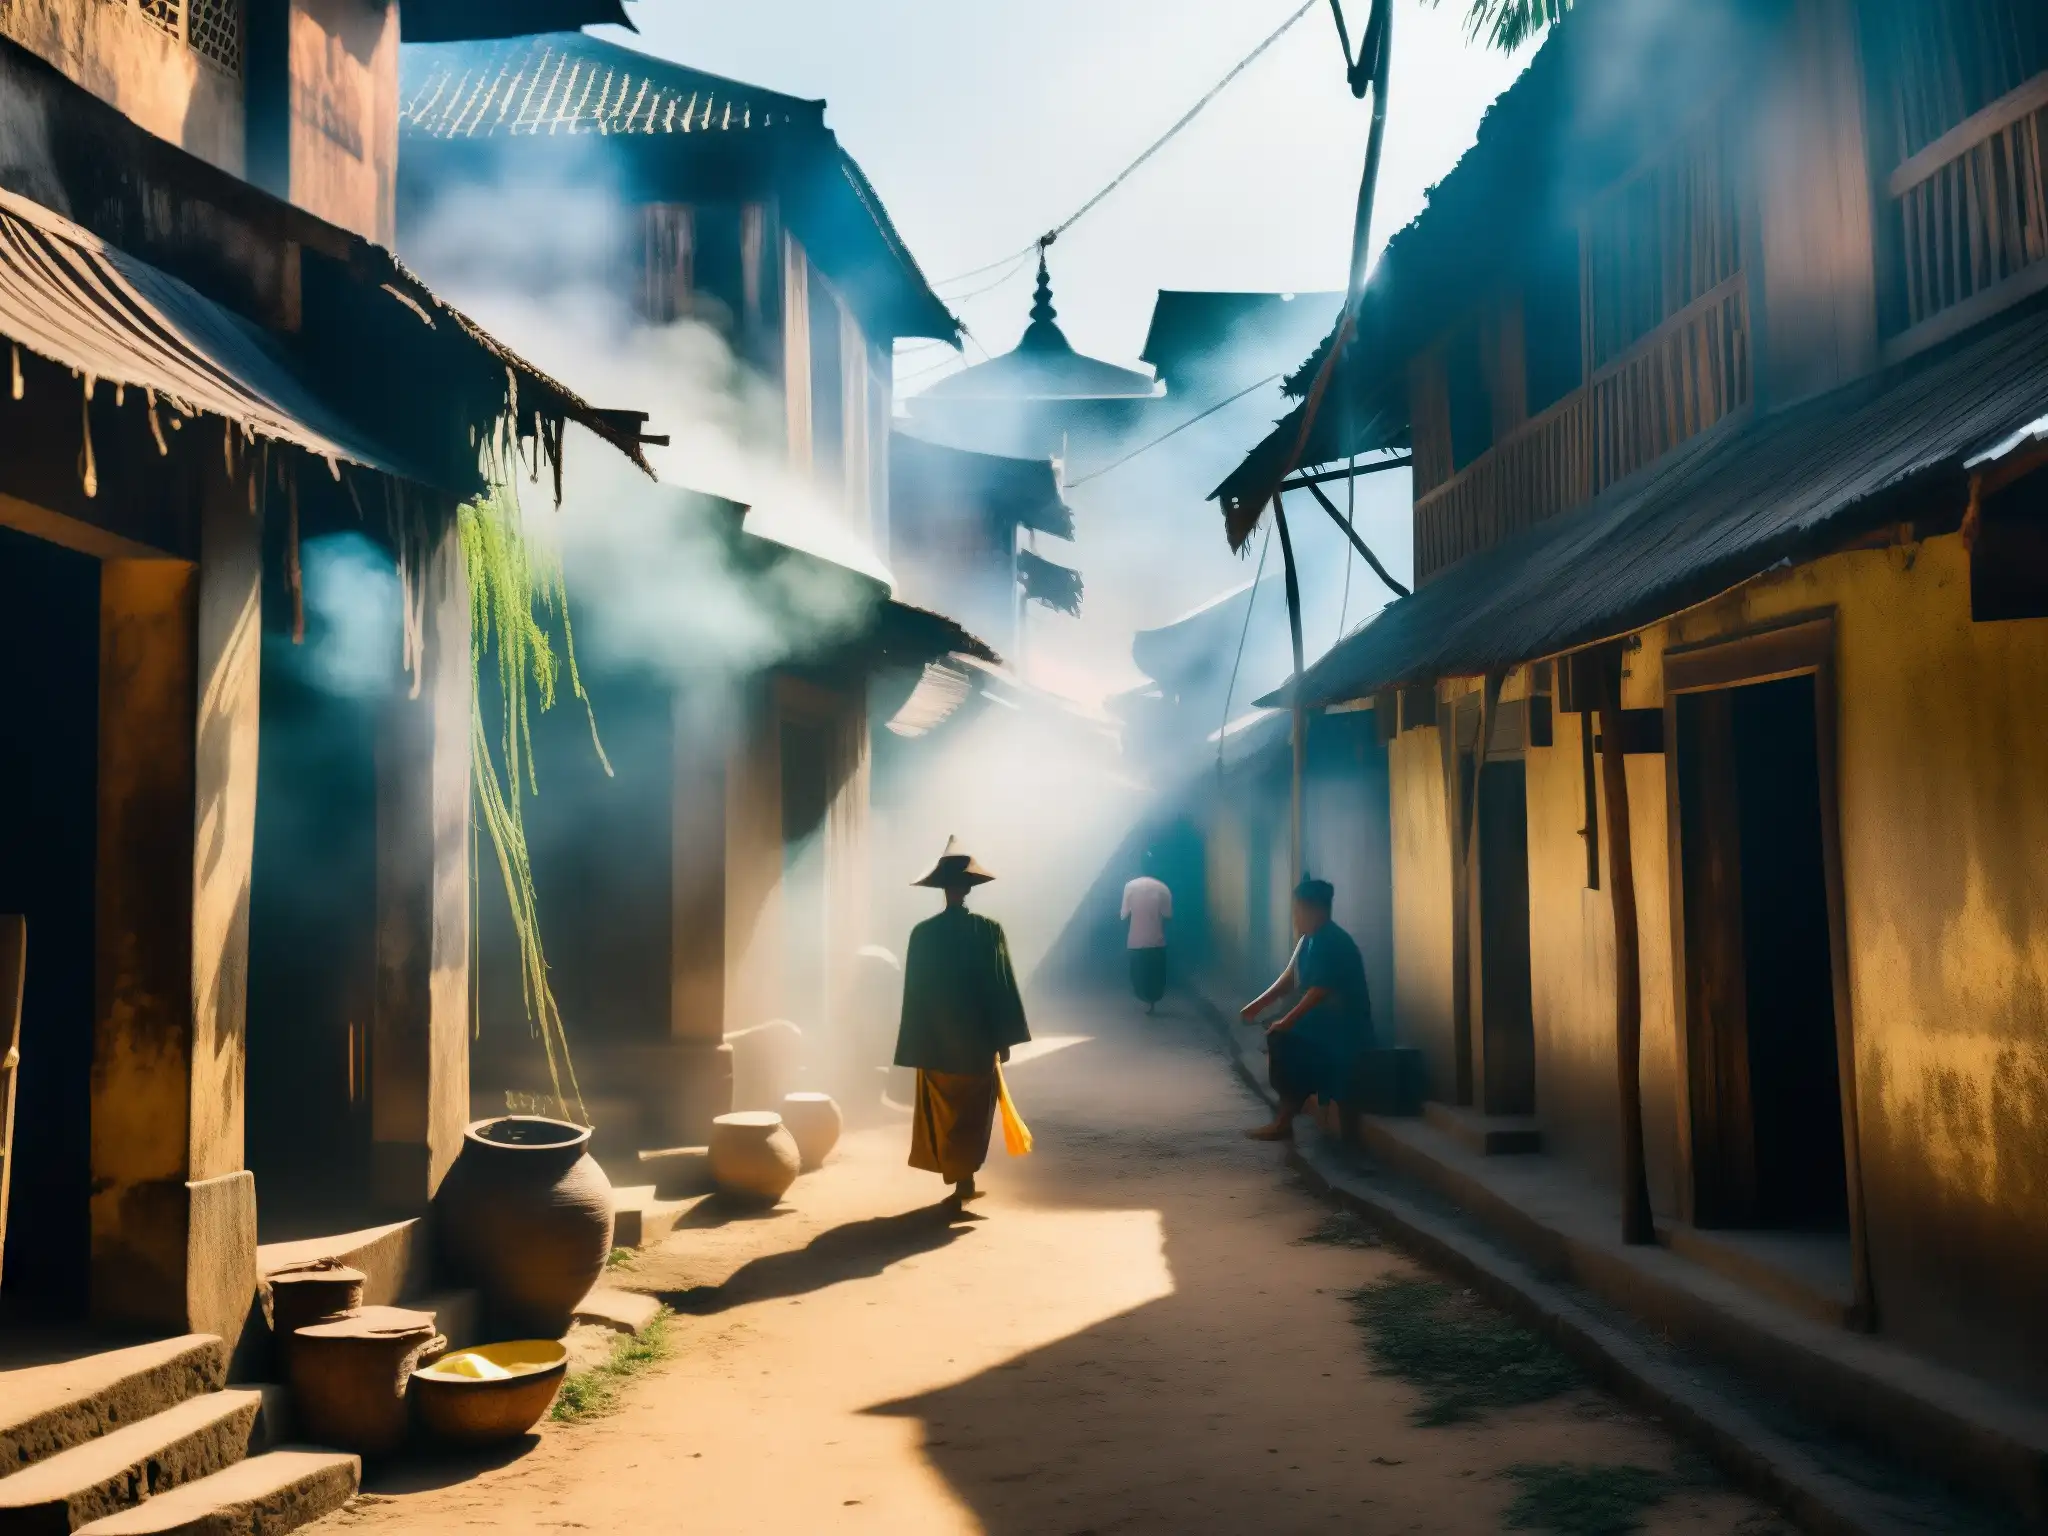 Escena de culto a los fantasmas hambrientos en una misteriosa calle de Myanmar, con figuras sombrías entre la niebla